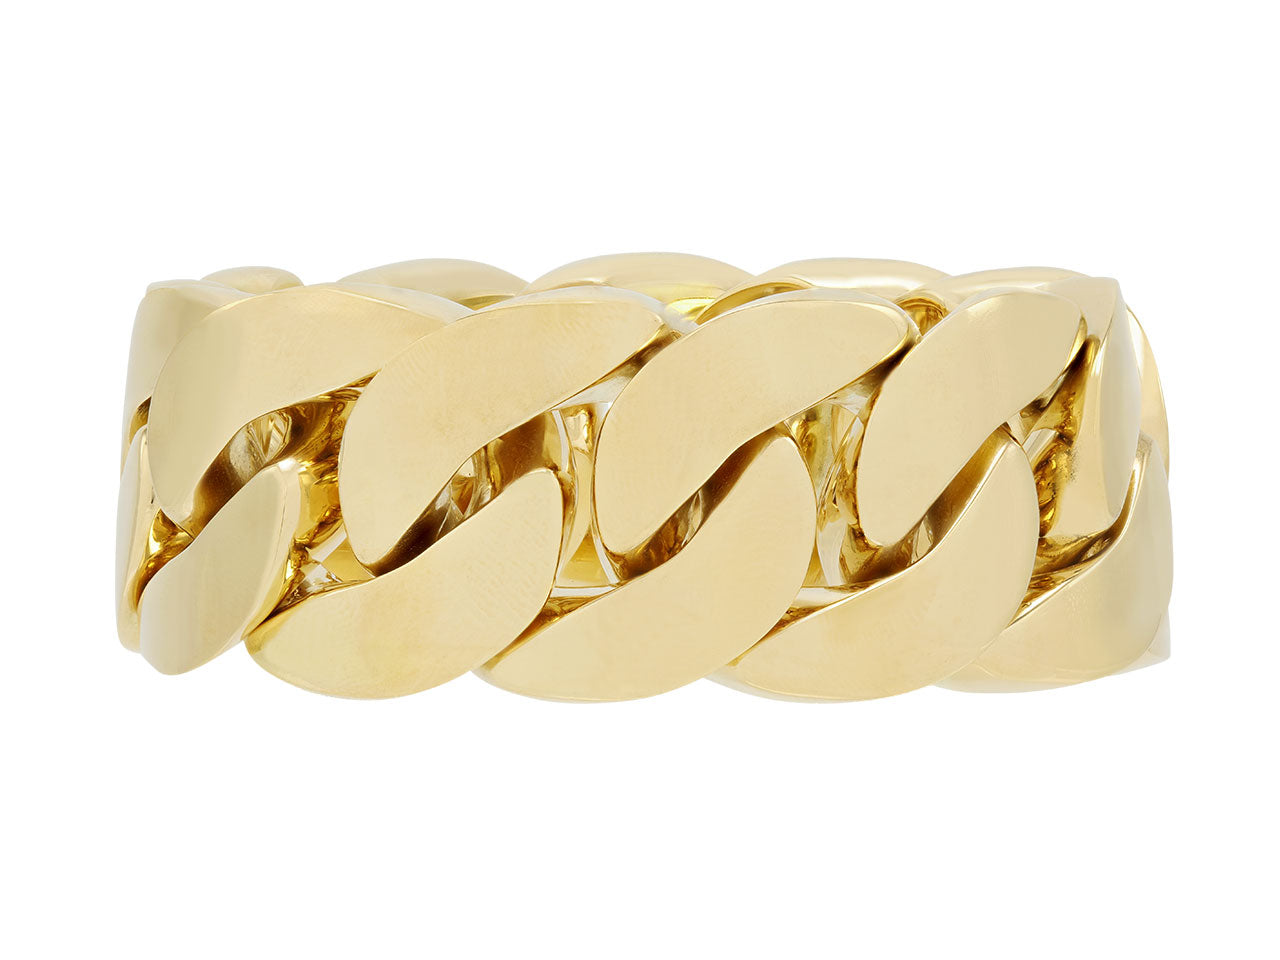 Curb Link Bracelet in 18K Gold, Large, by Beladora